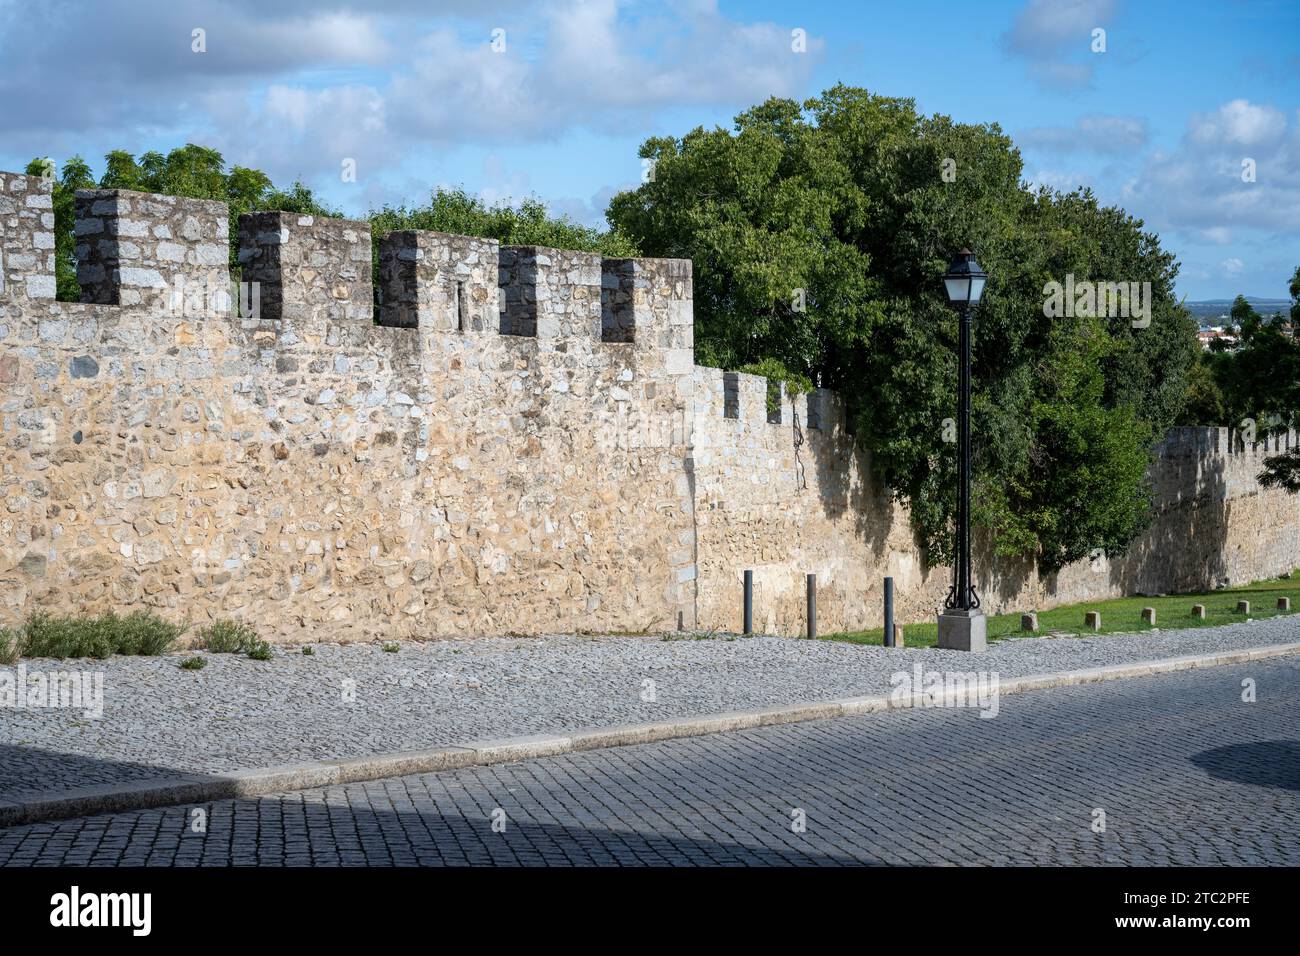 Ancienne muraille fortifiée, vieille ville, Evora, Alentejo, Portugal Banque D'Images